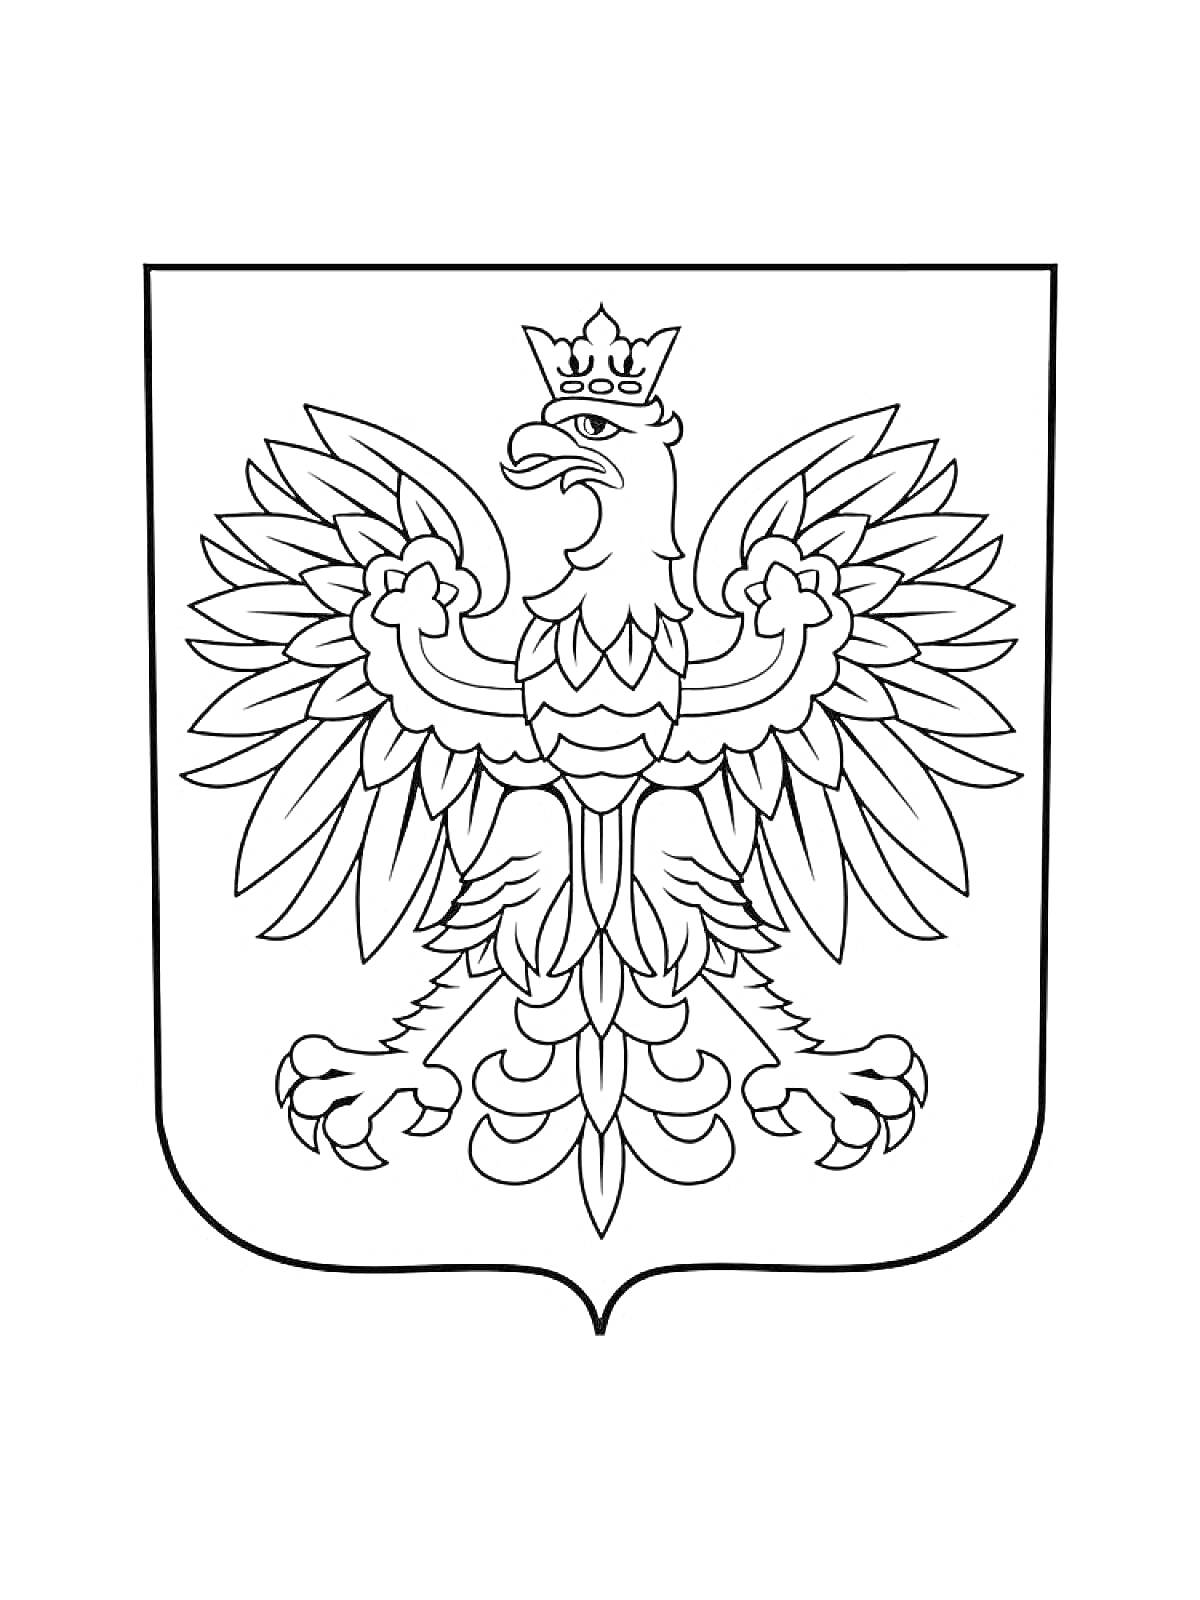 Герб с изображением орла в короне с распростертыми крыльями